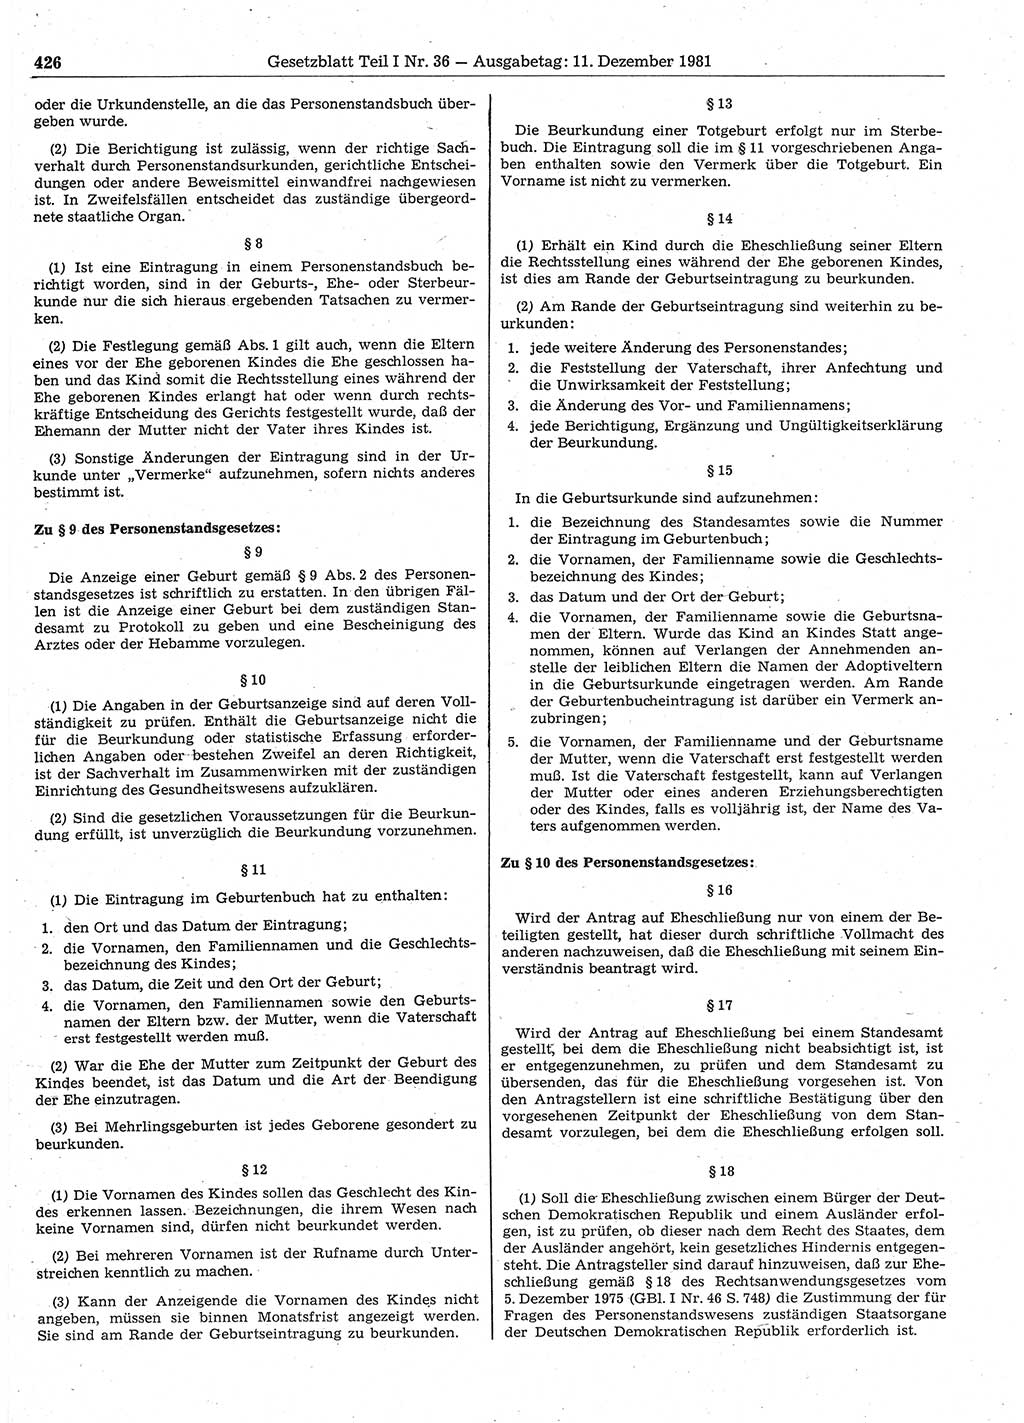 Gesetzblatt (GBl.) der Deutschen Demokratischen Republik (DDR) Teil Ⅰ 1981, Seite 426 (GBl. DDR Ⅰ 1981, S. 426)